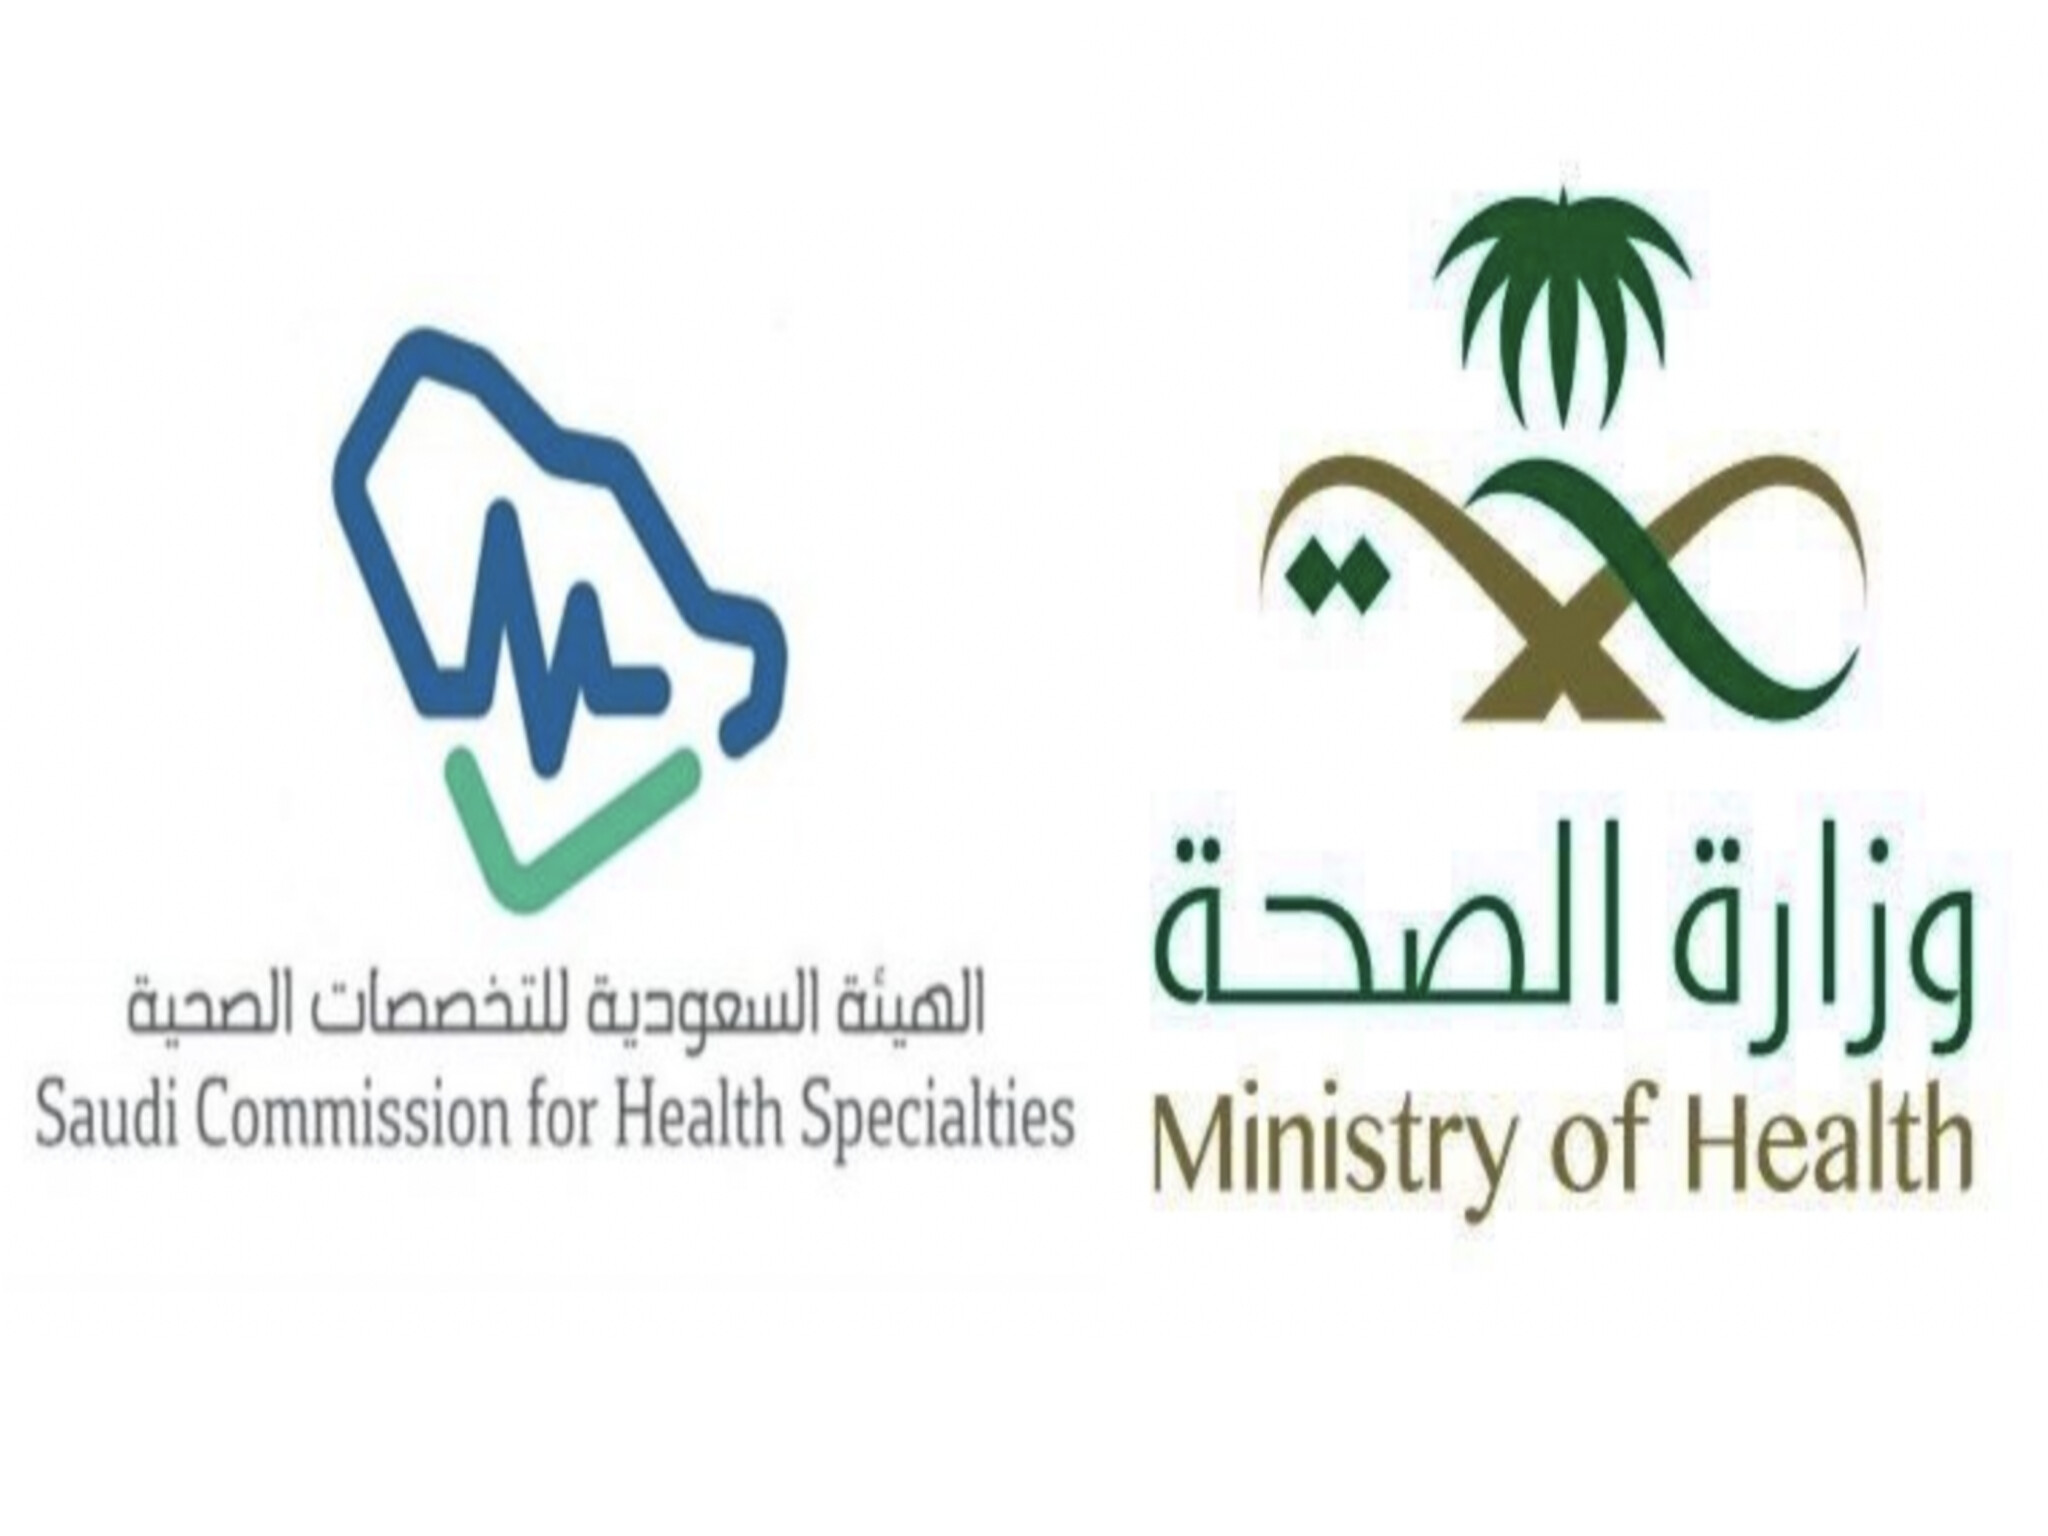  الهيئة السعودية للتخصصات الصحية تعلن بدء التسجيل في برنامج فني رعاية مرضى 